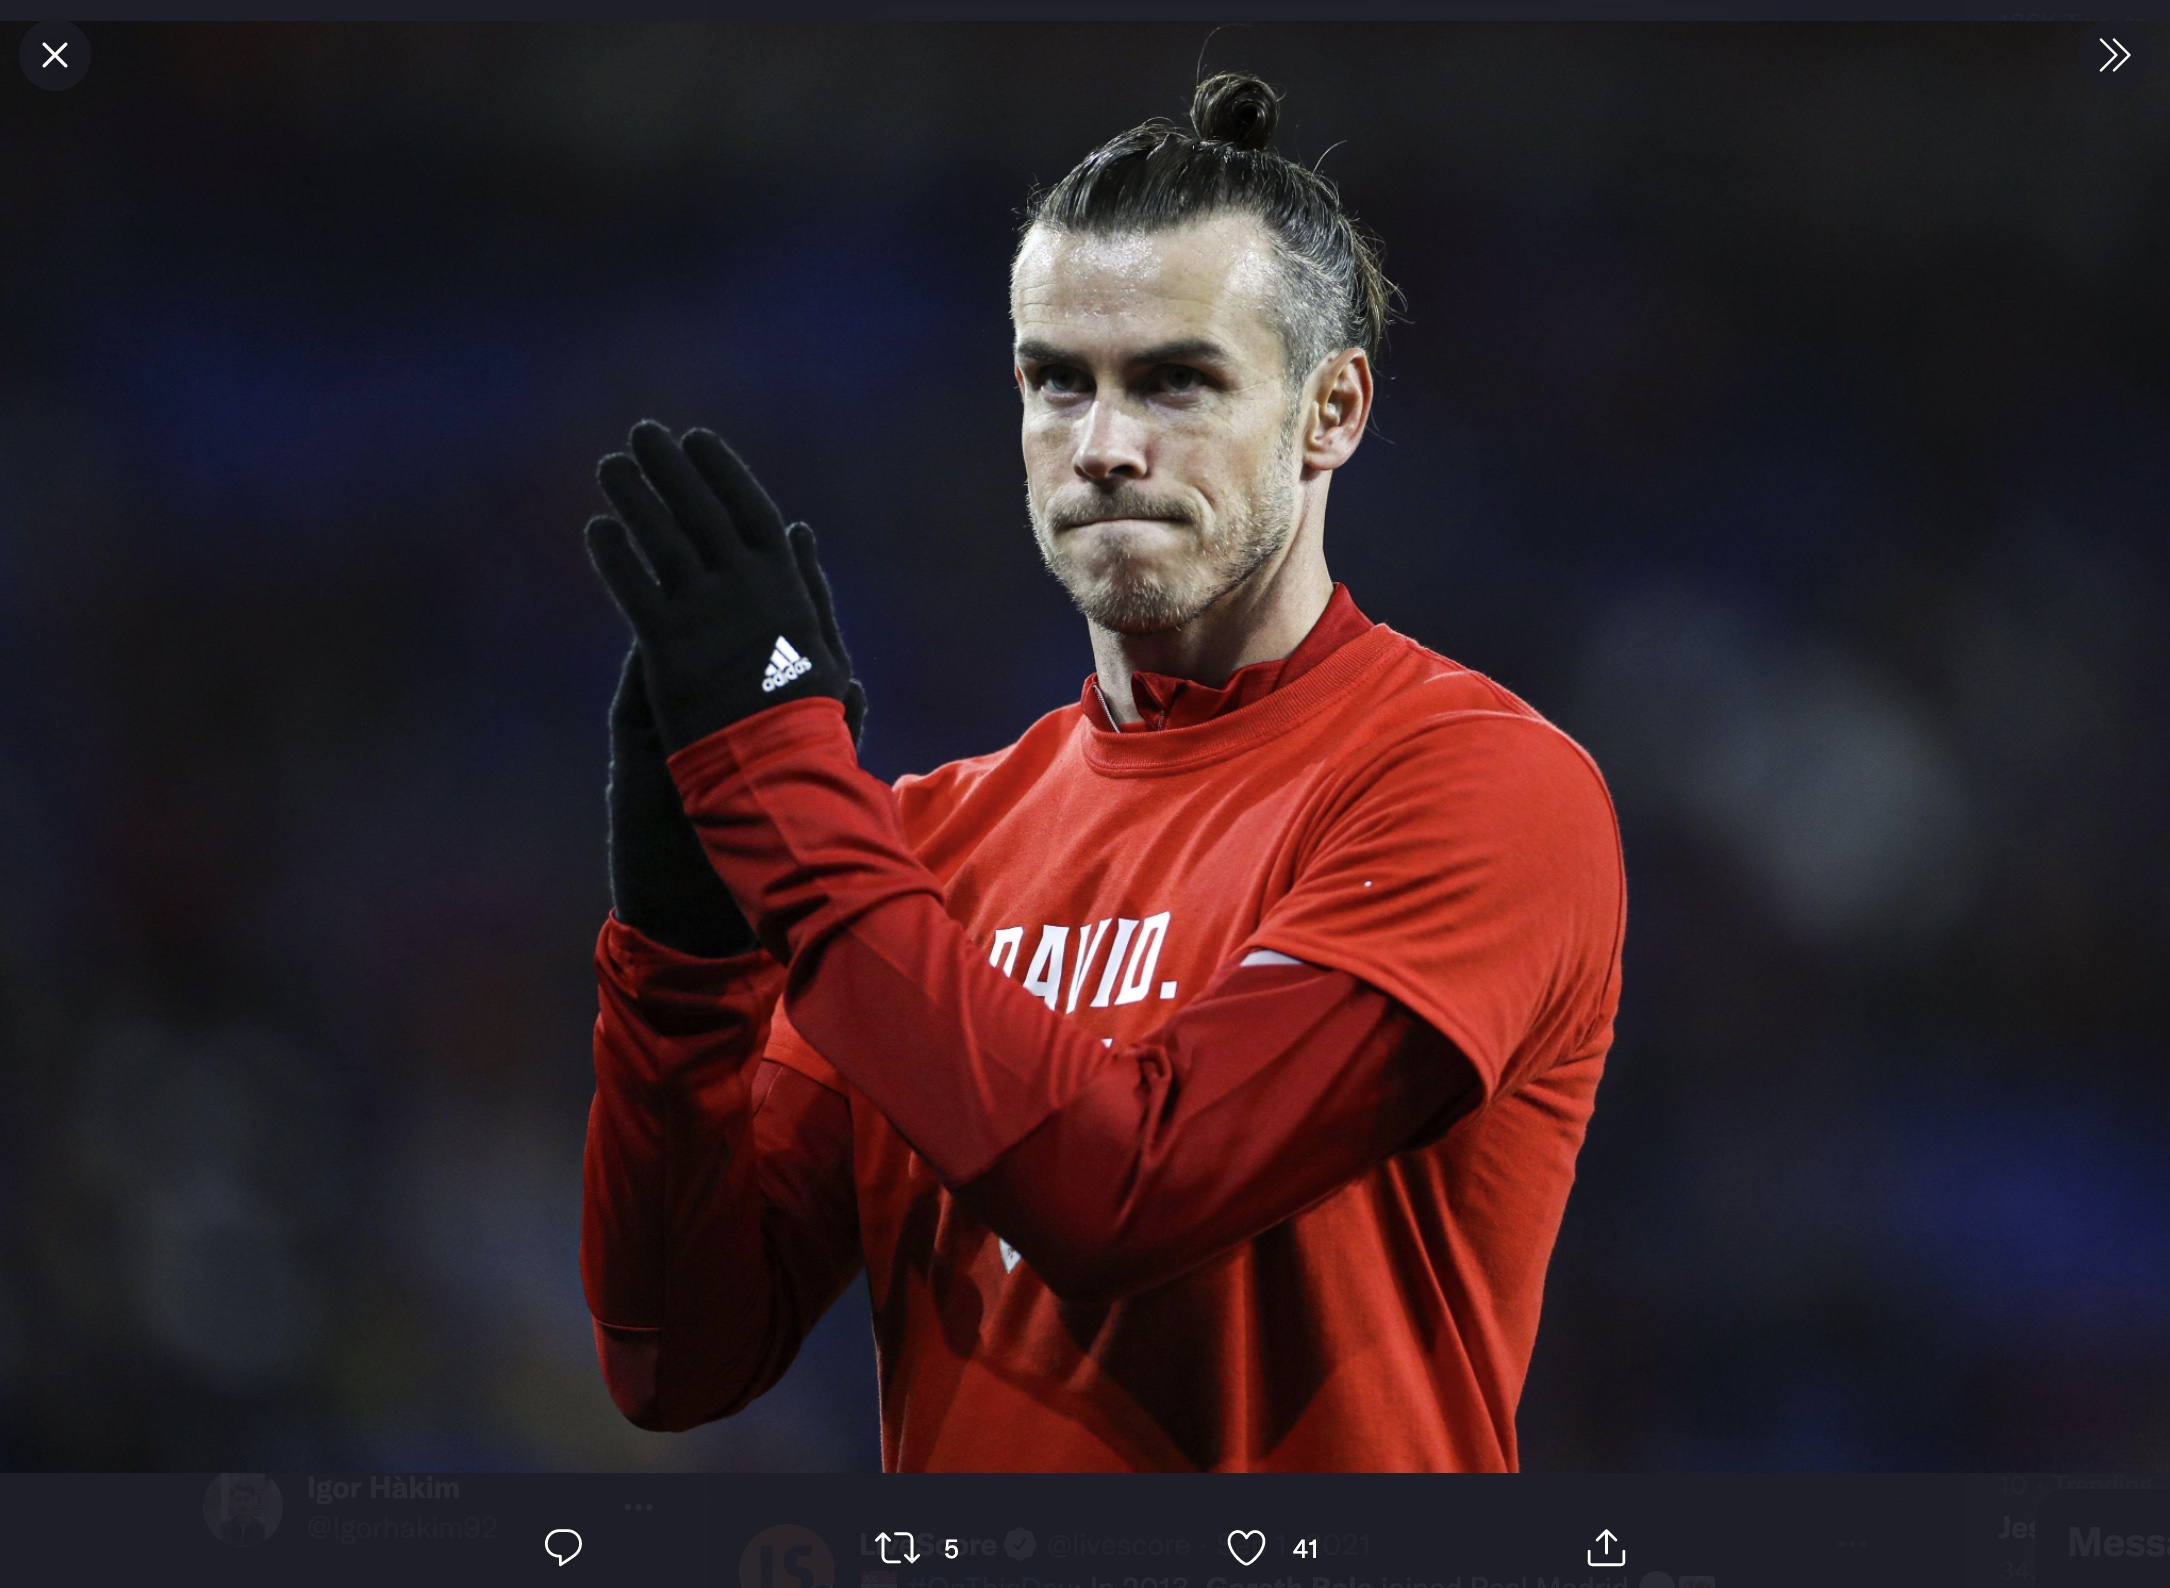 Agen: Gareth Bale Tinggalkan Real Madrid, Masa Depannya Bergantung pada Wales